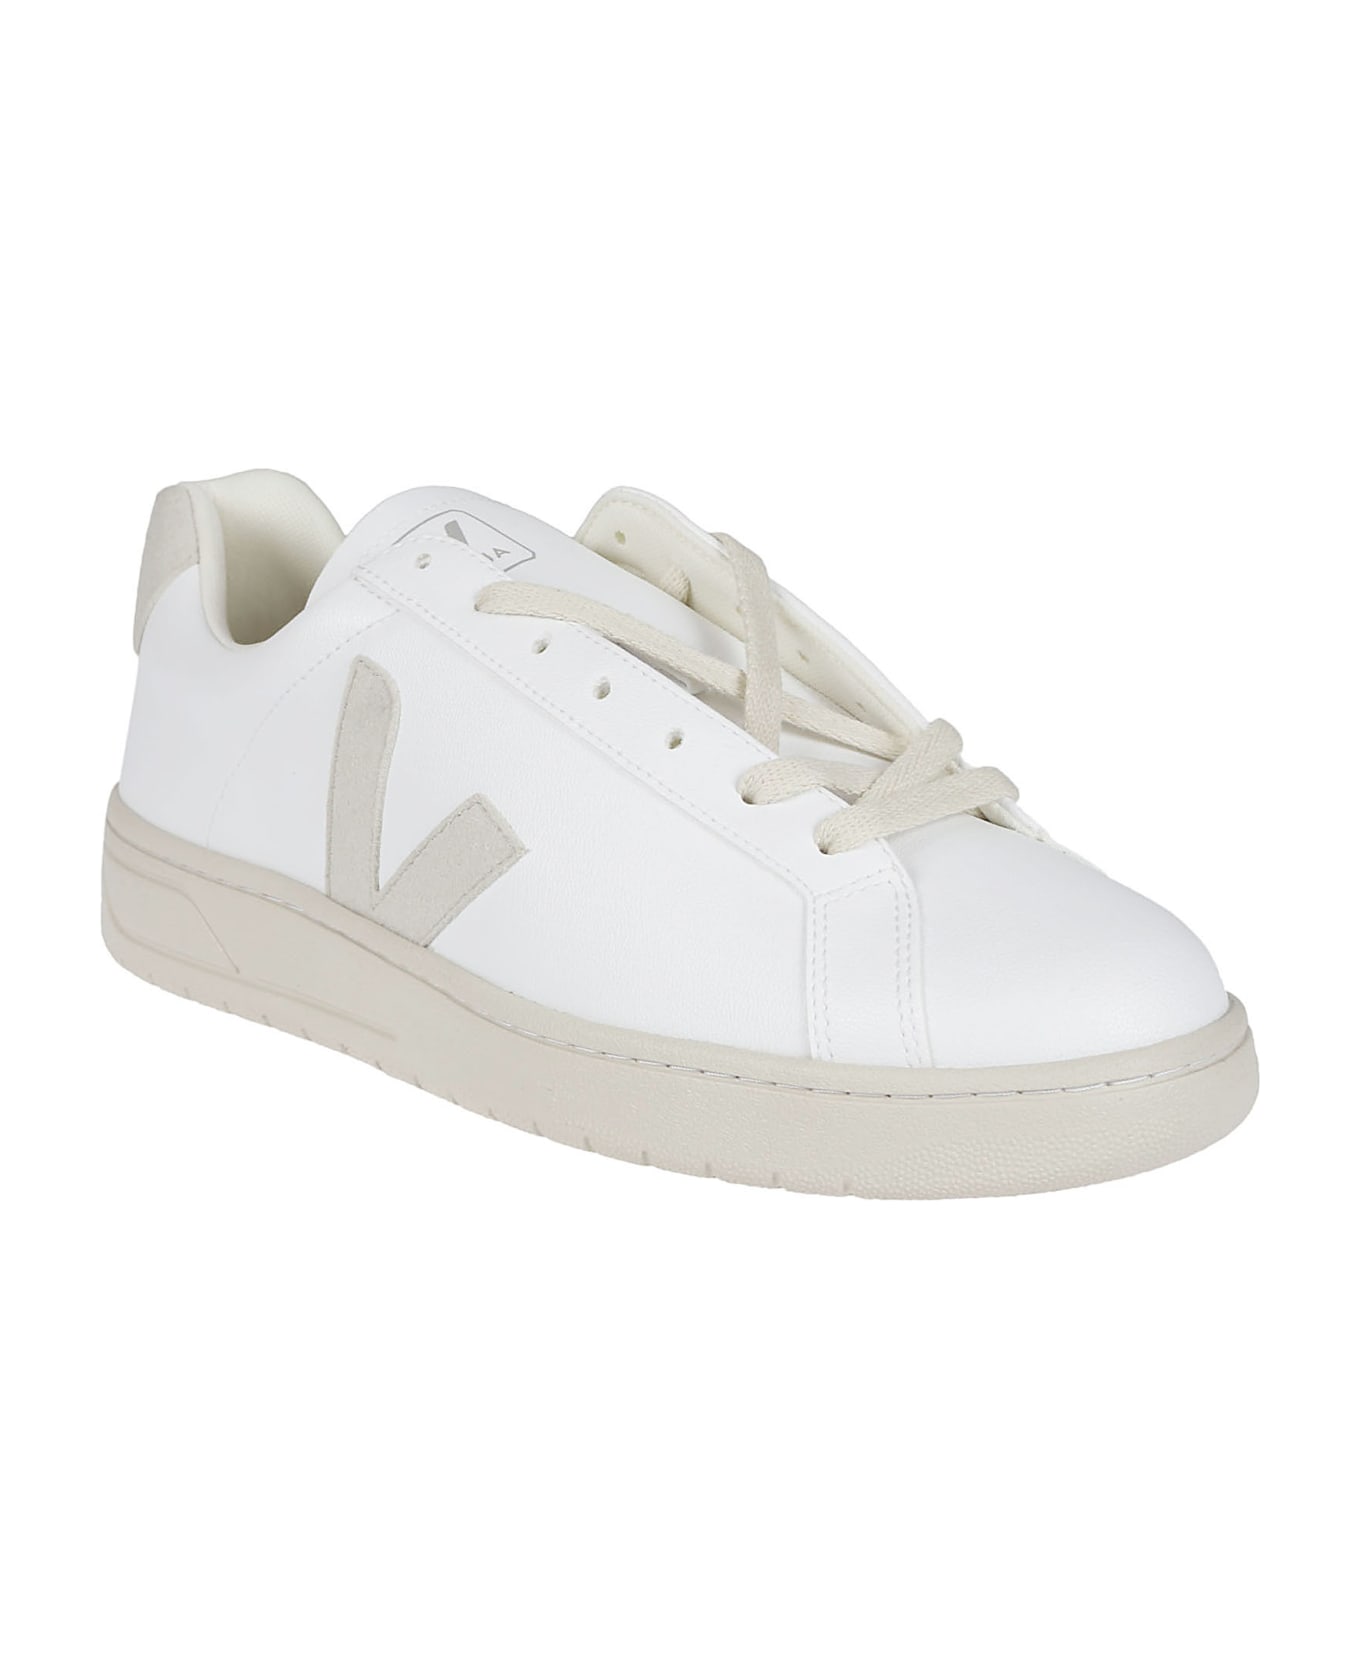 Veja Urca Sneakers - White/natural